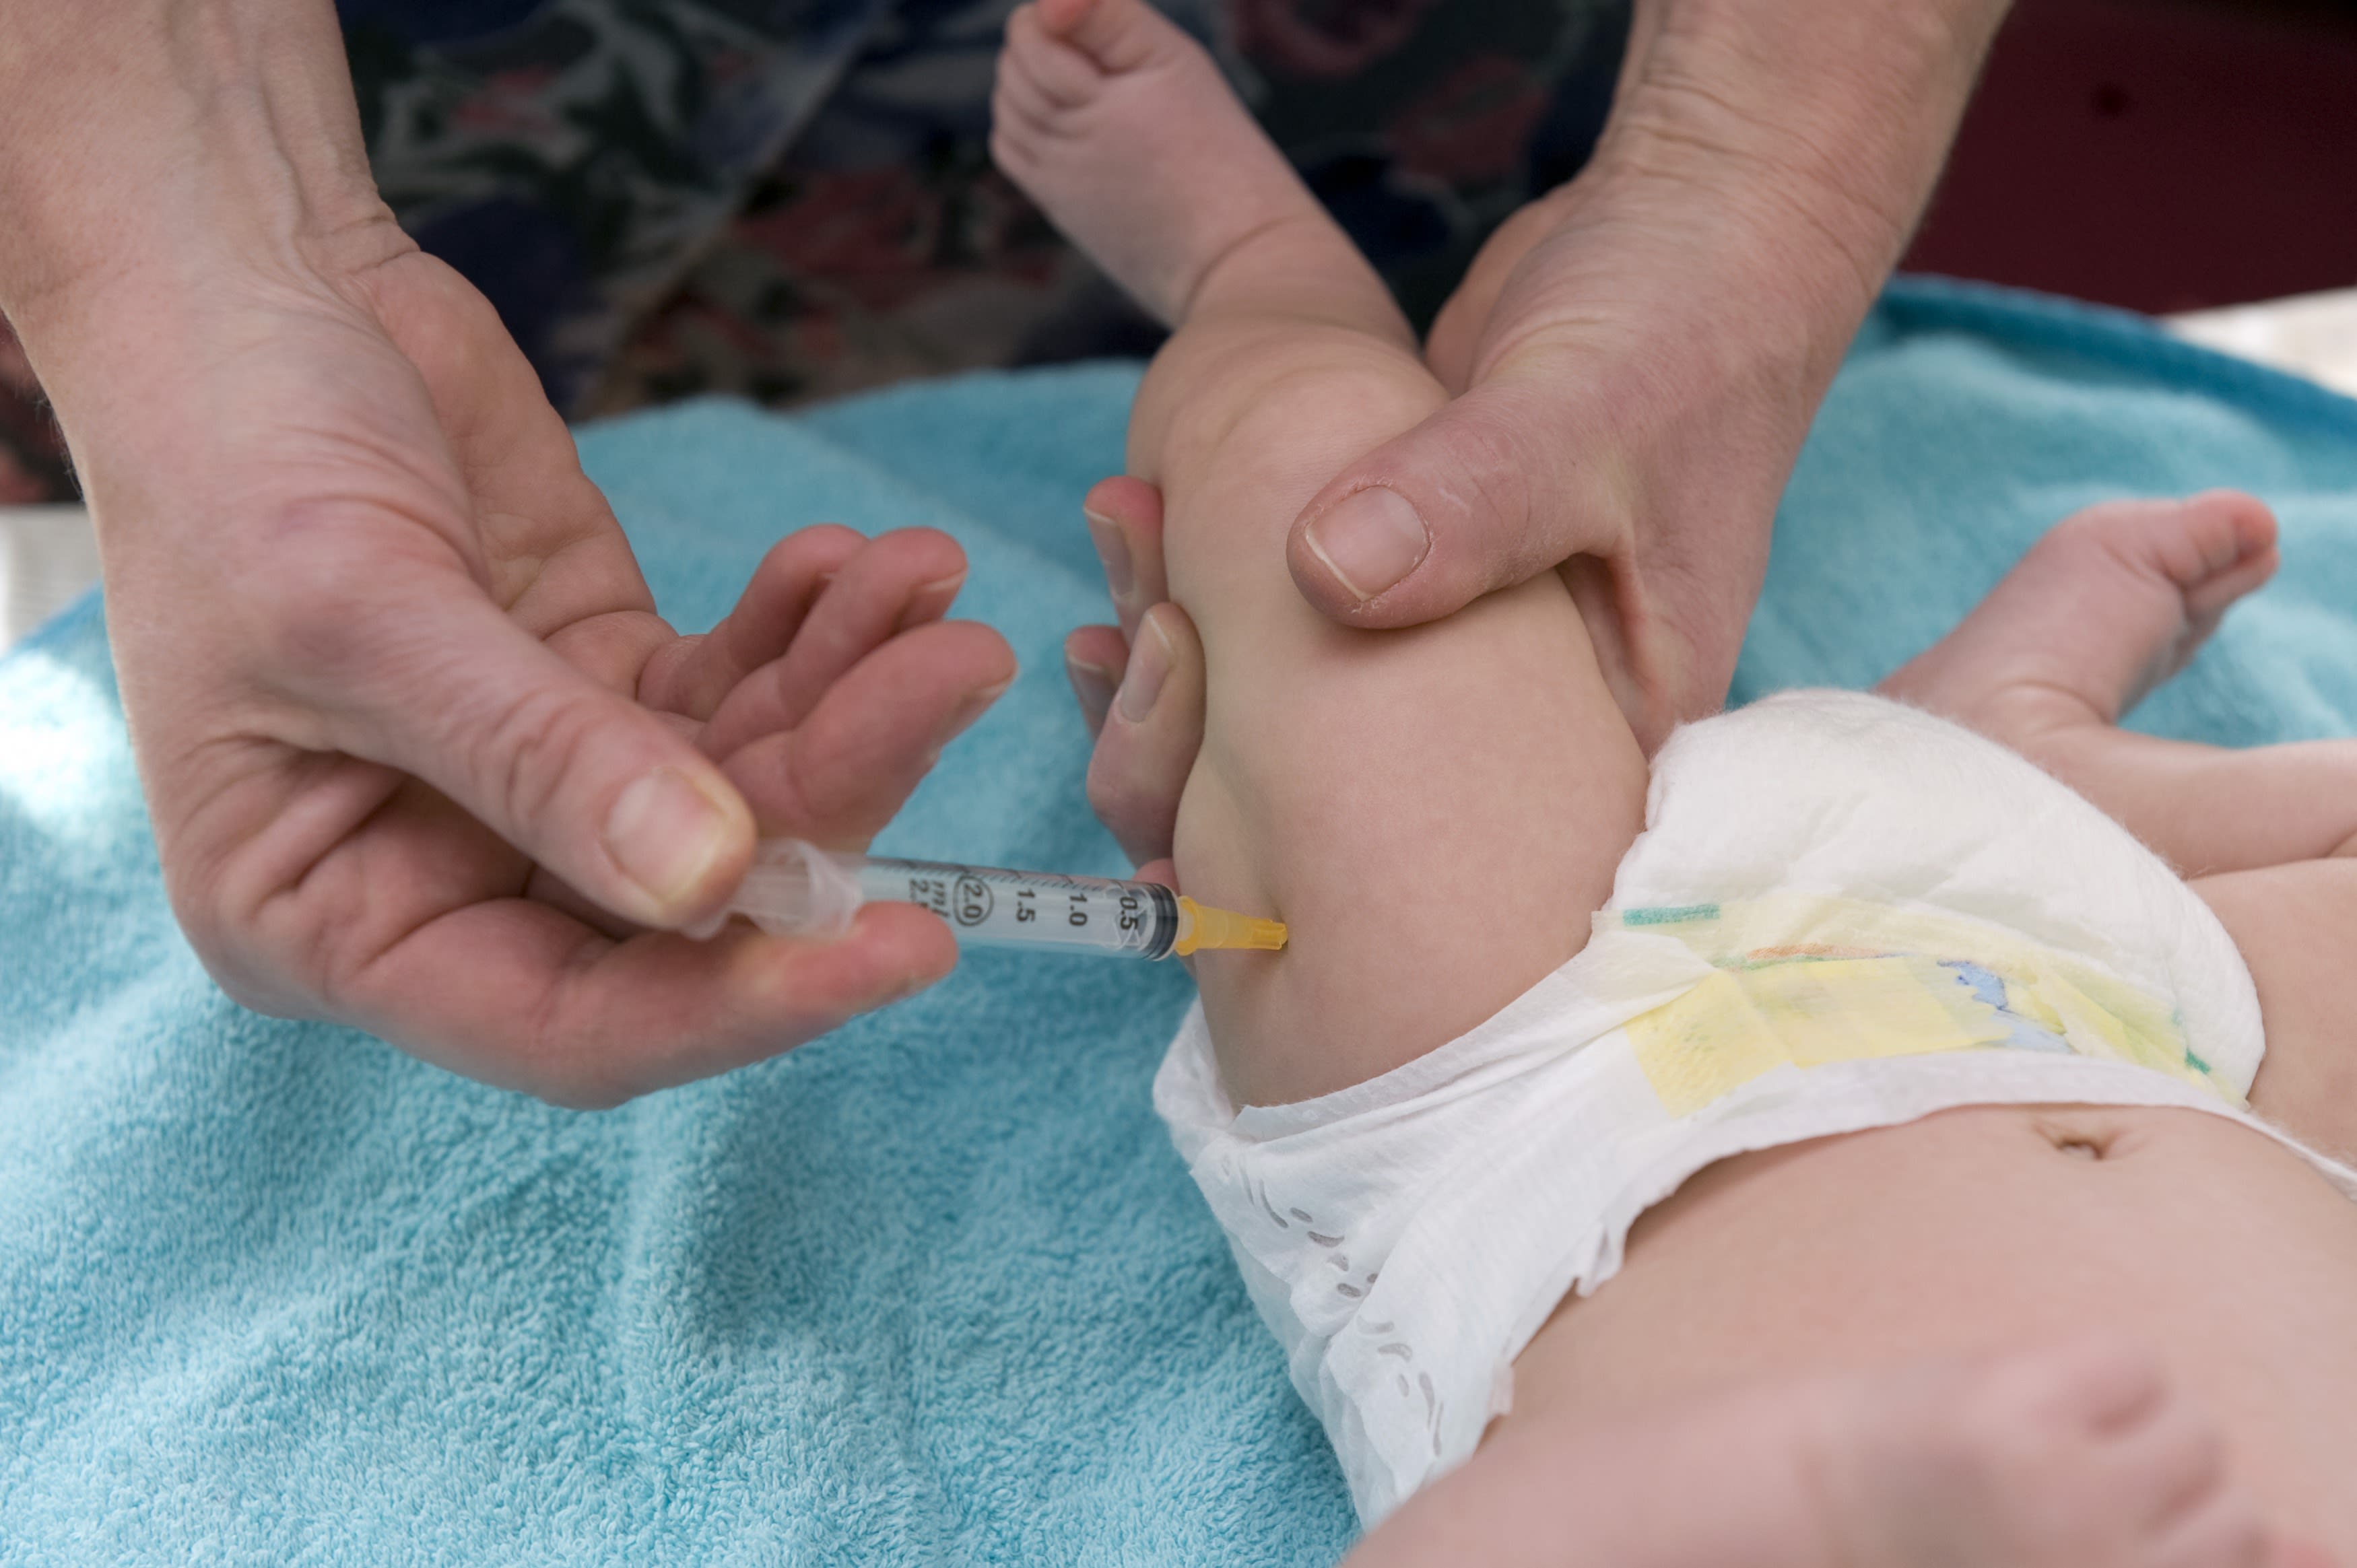 VVD wil met wetsvoorstel ongevaccineerde kinderen weren uit opvang